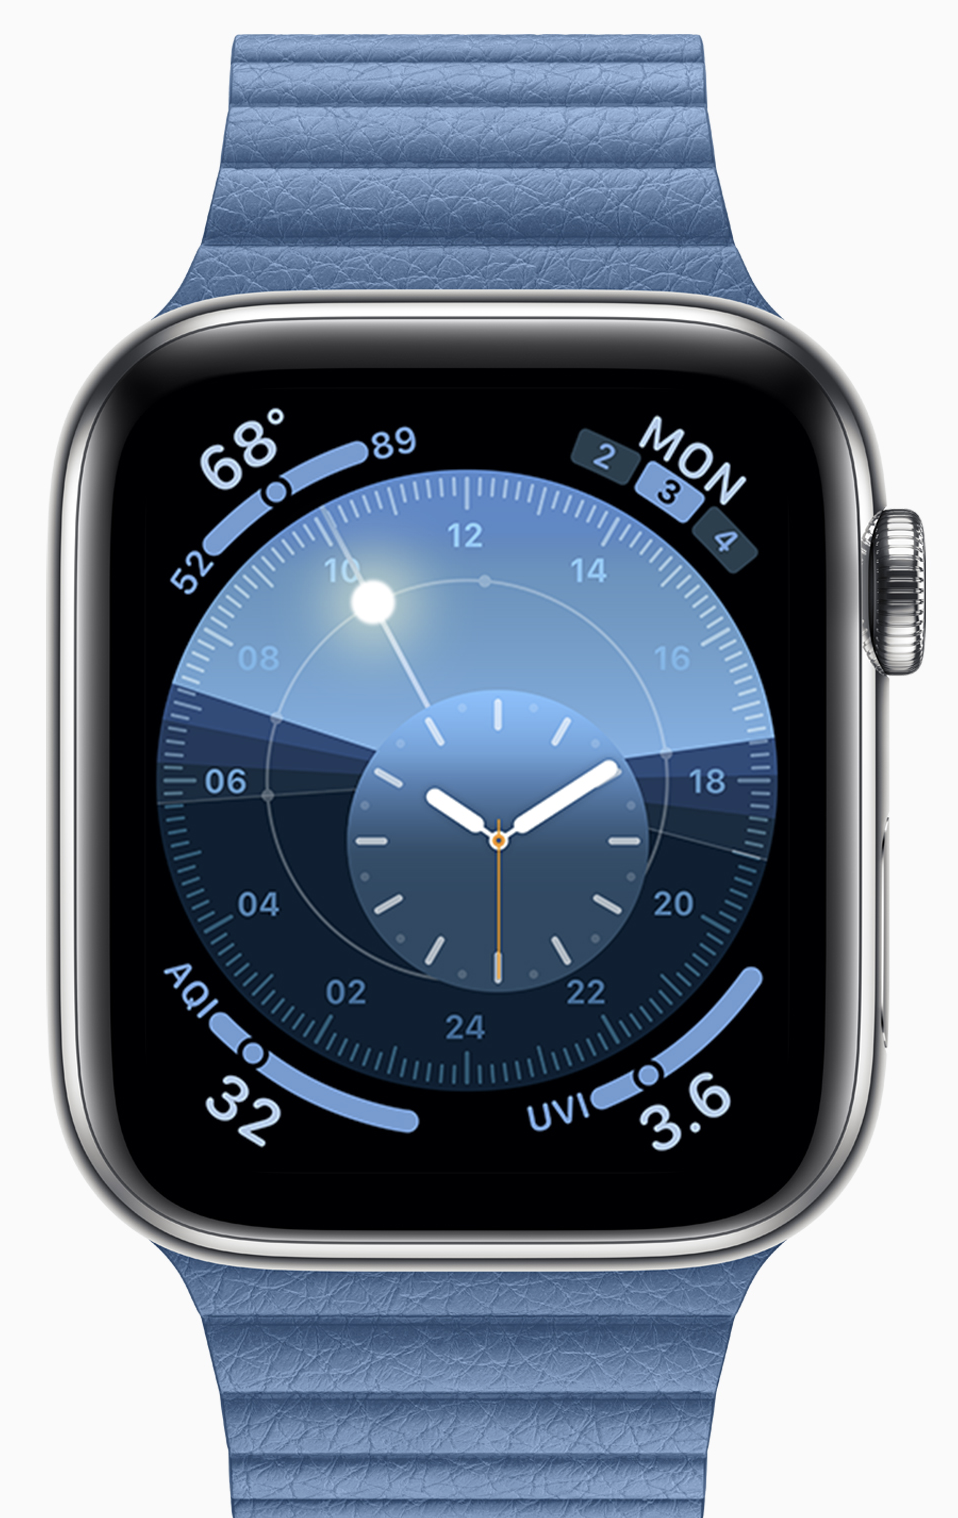 Apple releases second developer beta of watchOS 6.2.8